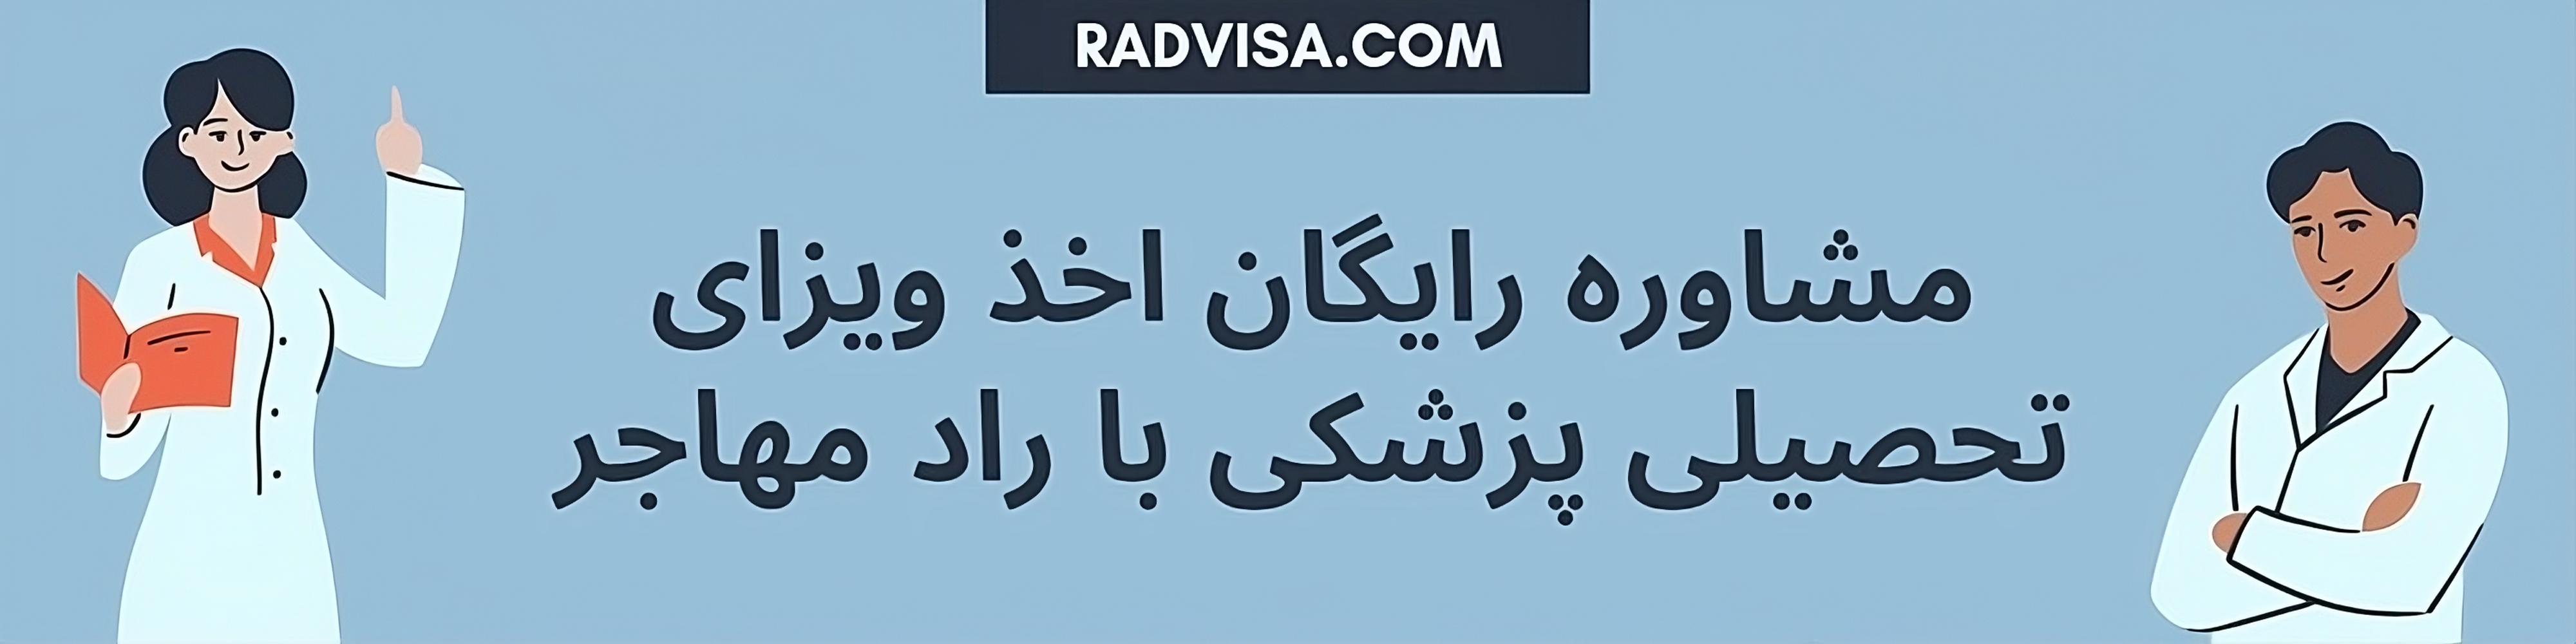 مشاوره تحصیل پزشکی در کشورهای عربی